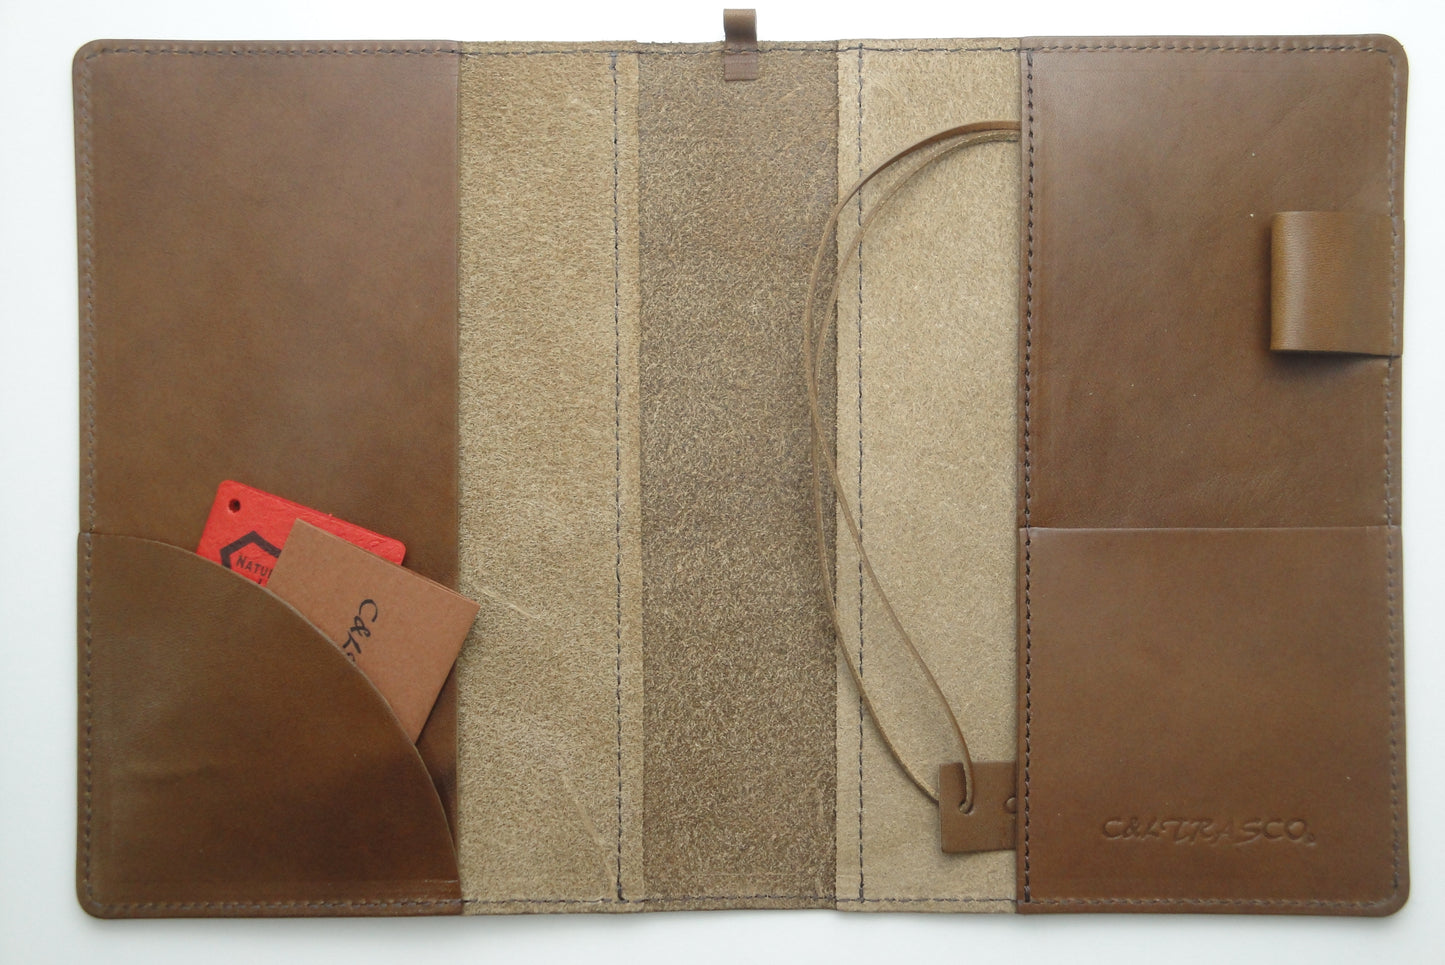 【日本職人仕上げ Vintage】 手帳カバー B6サイズ　ヌメ革（植物タンニン鞣し）